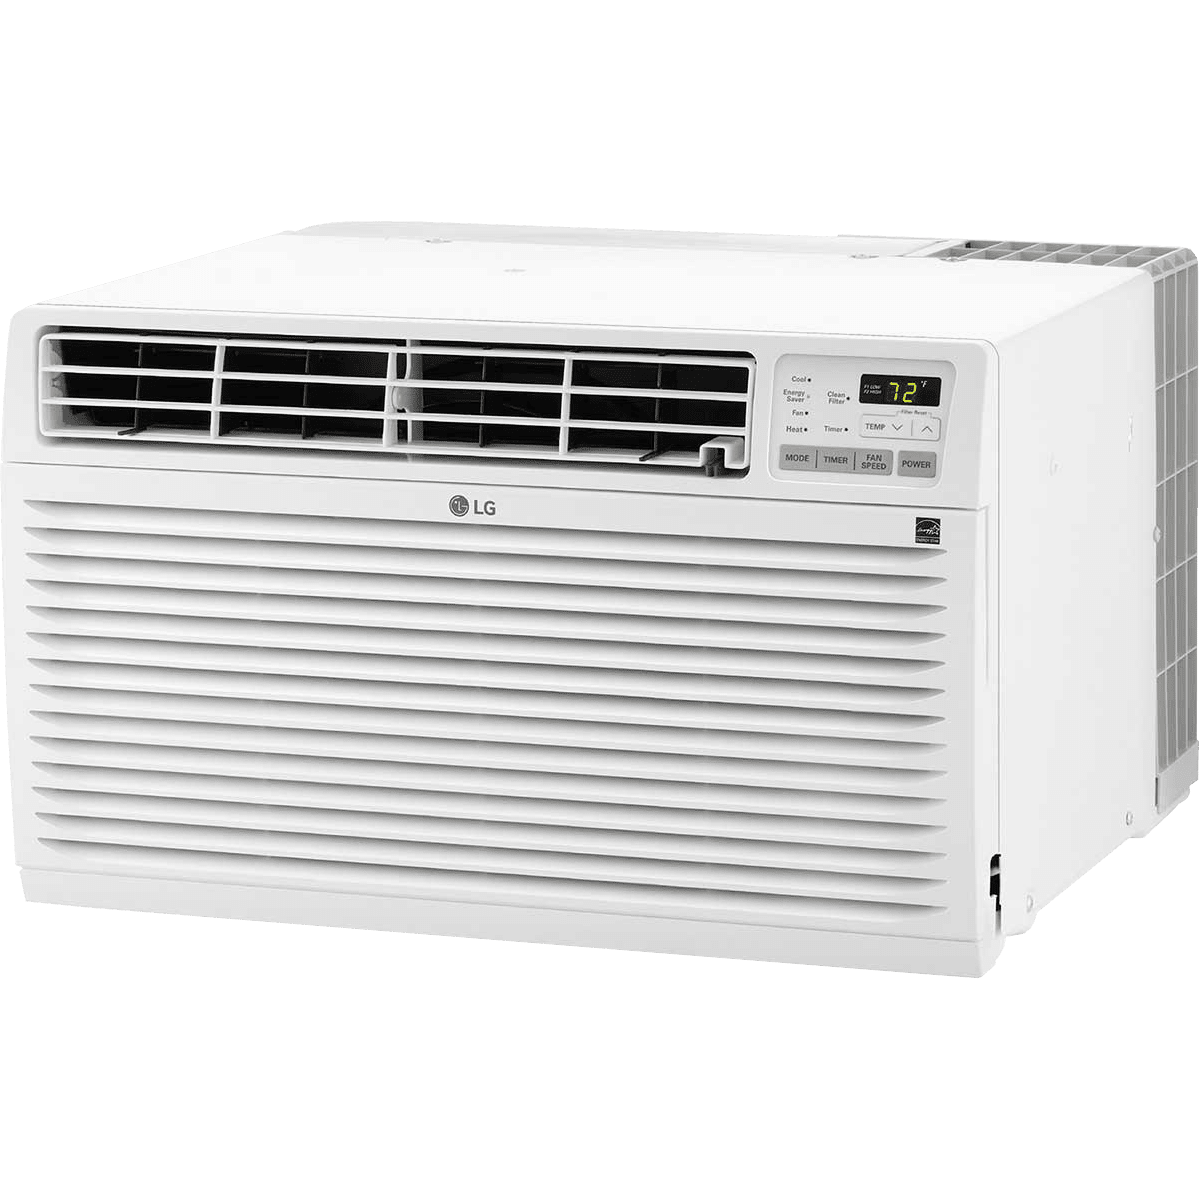 Lg 9800 Btu Air Conditioner : Lg Electronics 5 000 Btu Window Air